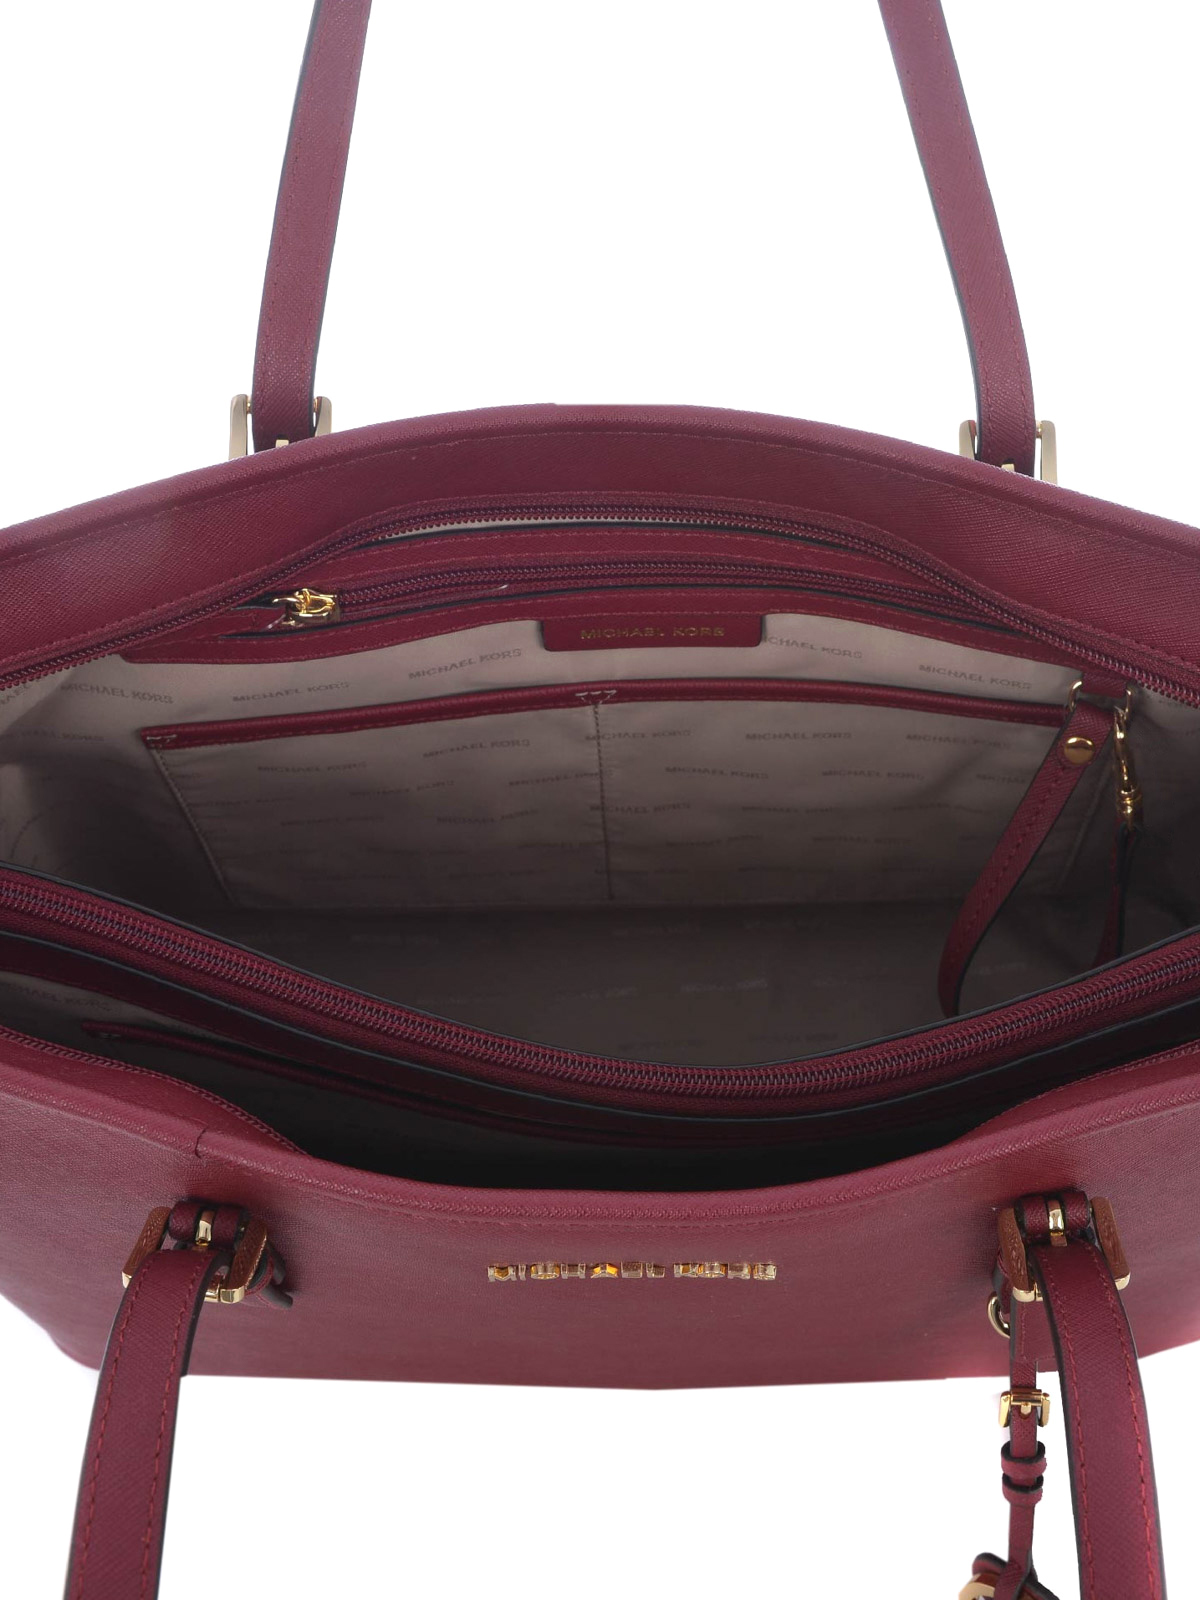 Totes bags Michael Kors - Jet Set Travel mulberry medium tote -  30T5GTVT2L666